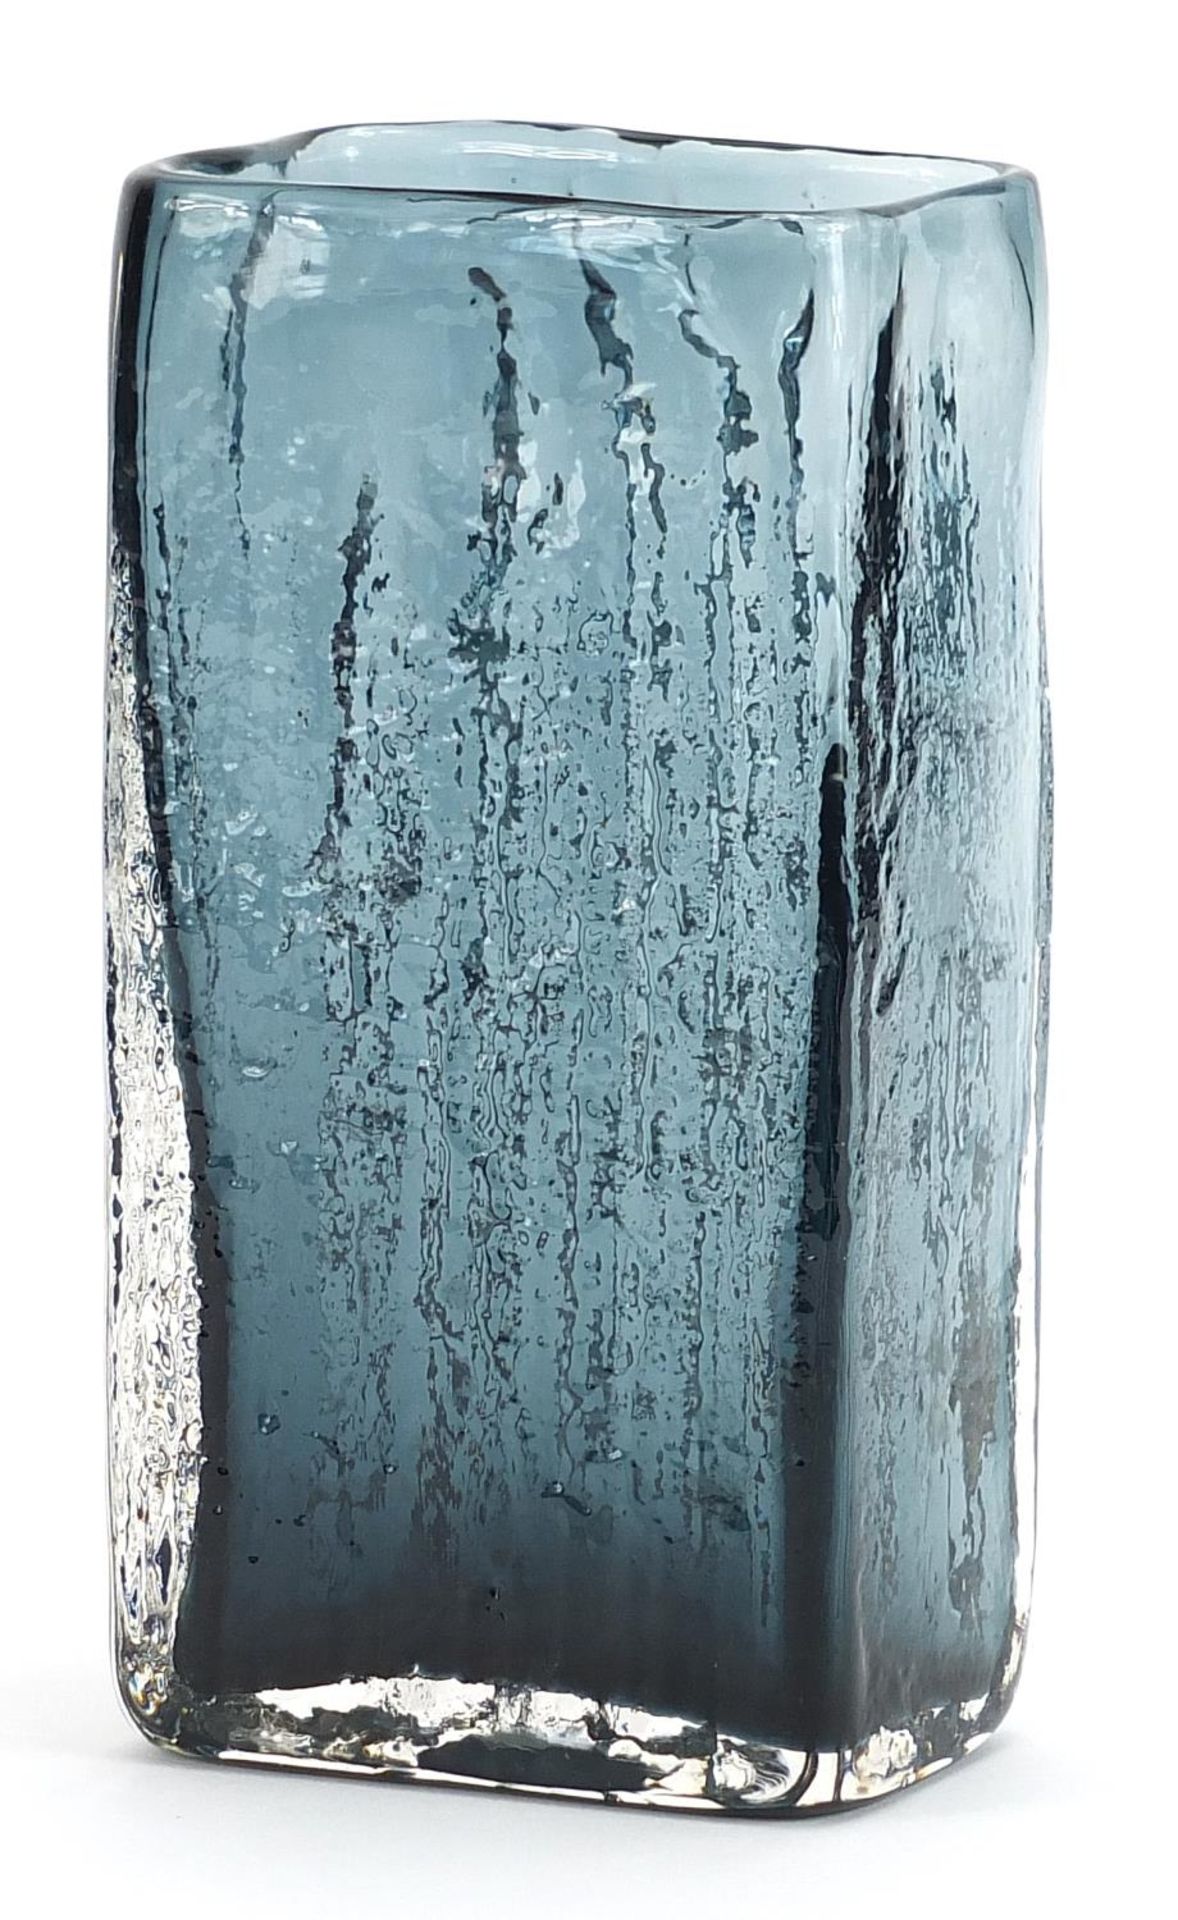 Geoffrey Baxter for Whitefriars, bamboo glass vase in indigo or pewter, 20.5cm high - Bild 2 aus 3